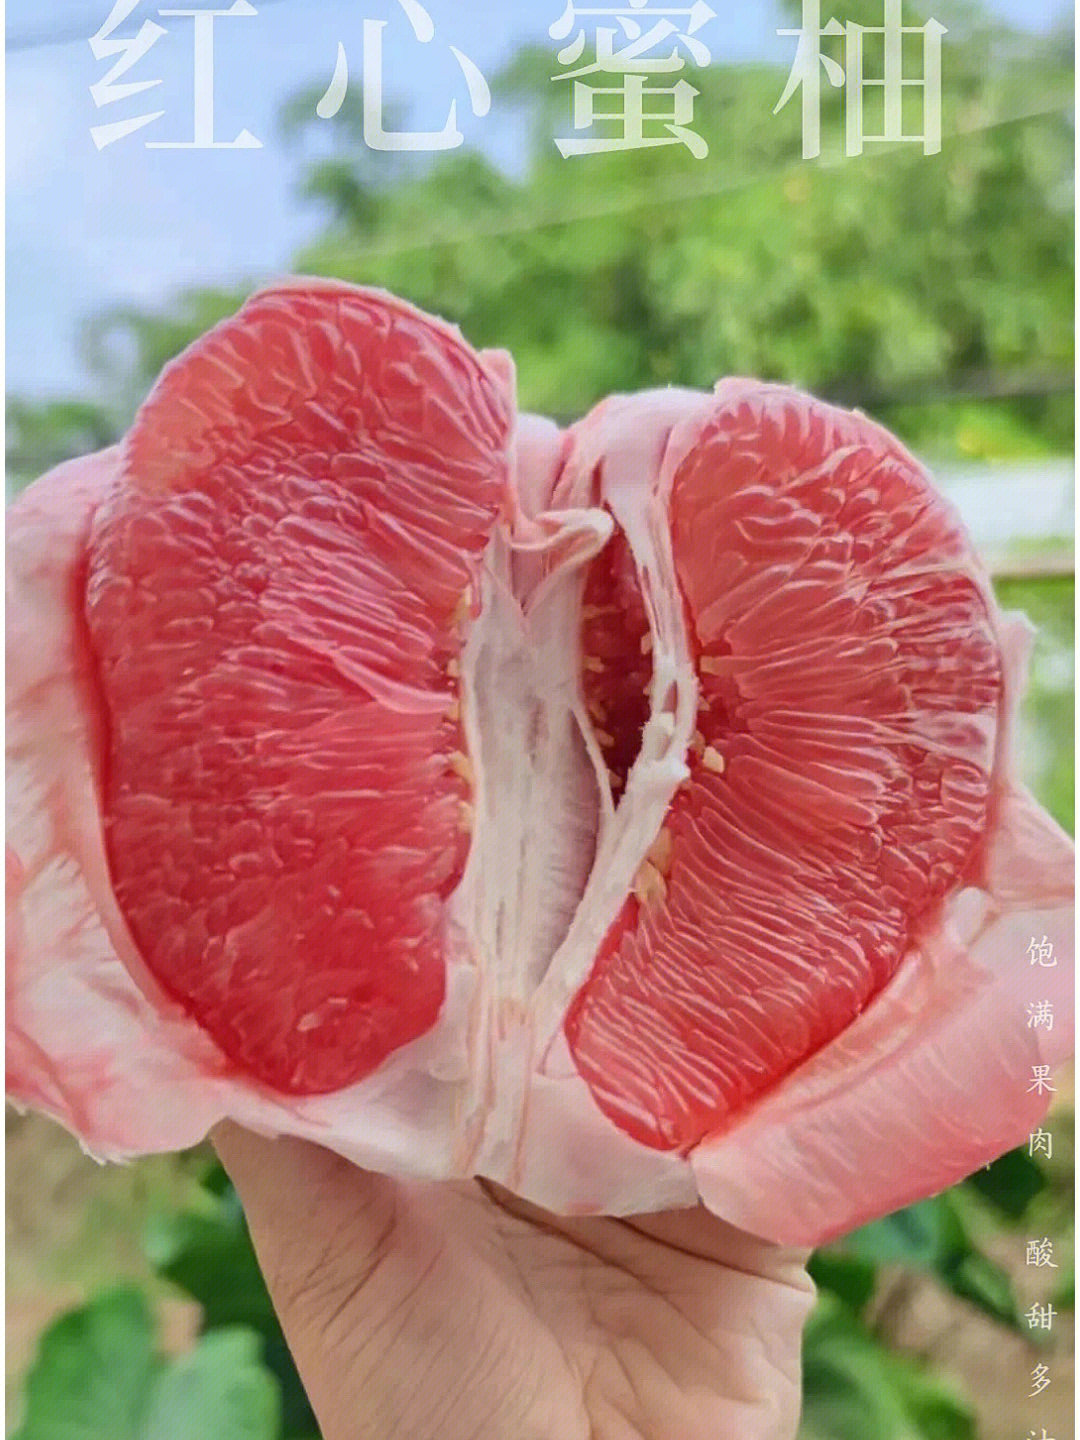 三红柚之所以果肉呈红色,是因富含维生素a,β